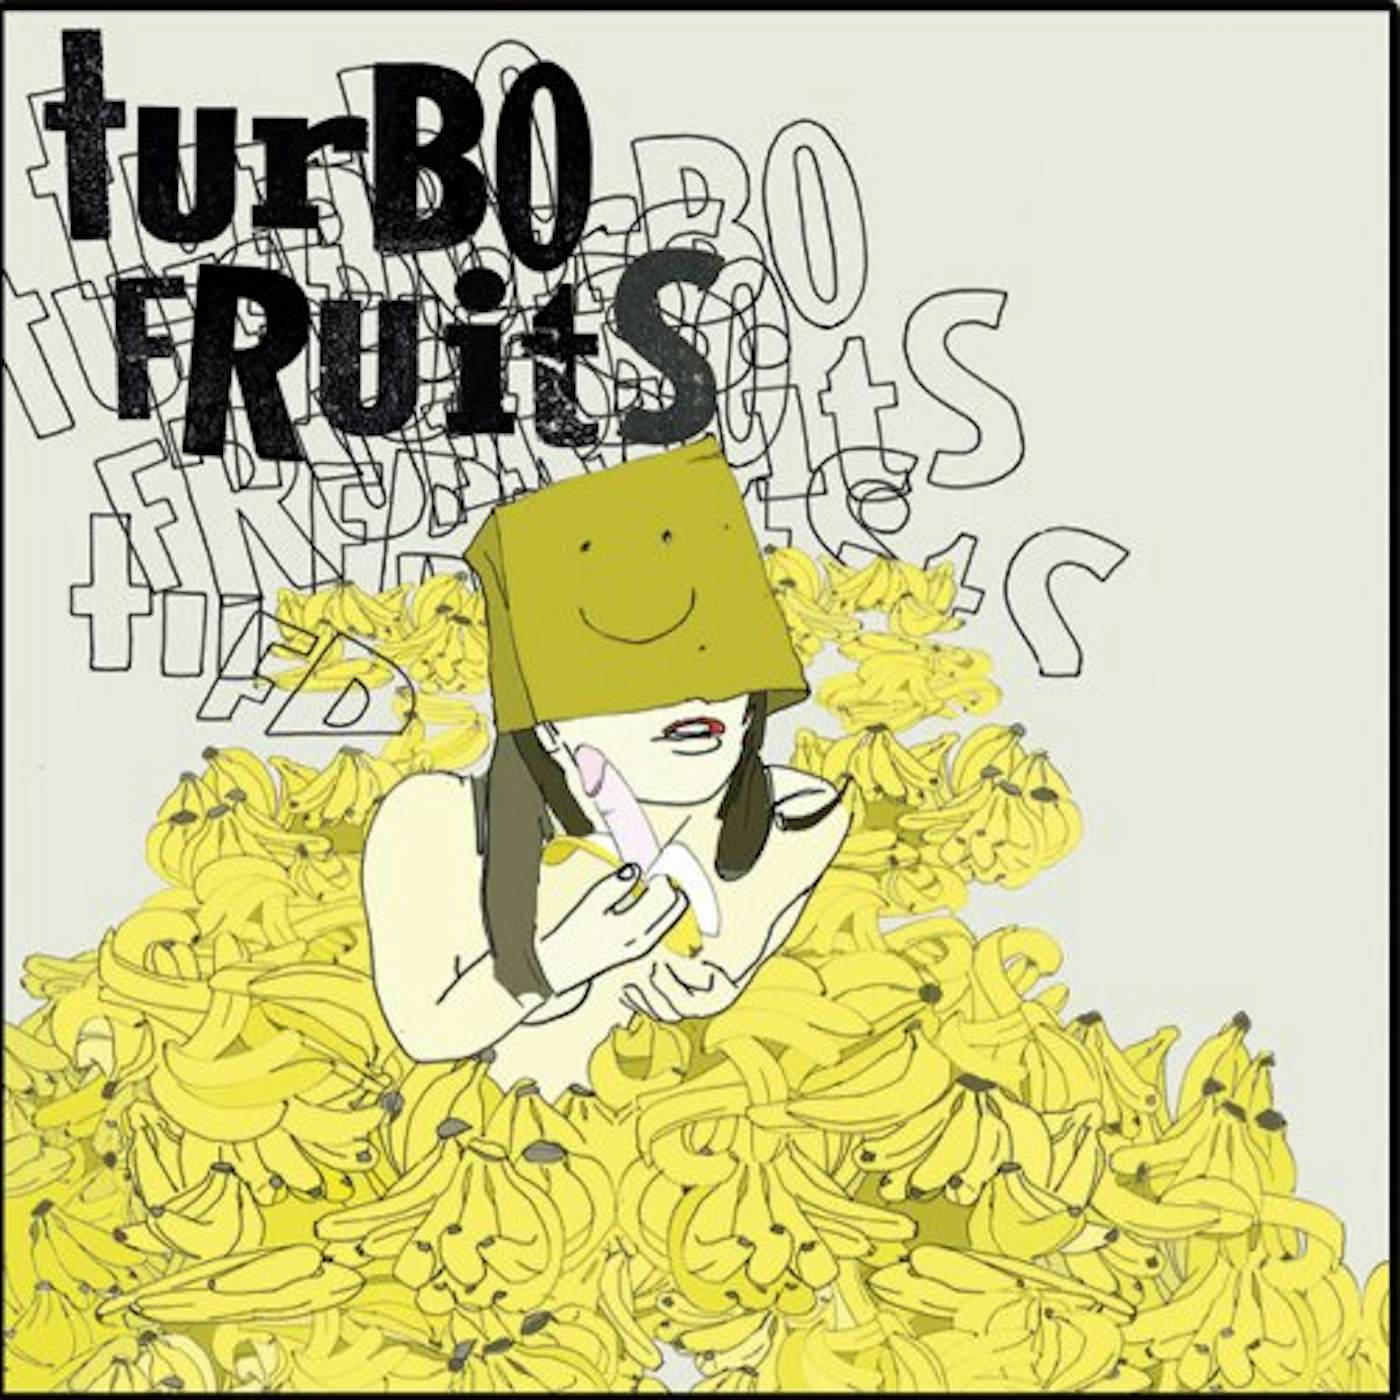 Turbo Fruits Mama's Mad Cos I Fried My Brain Vinyl Record